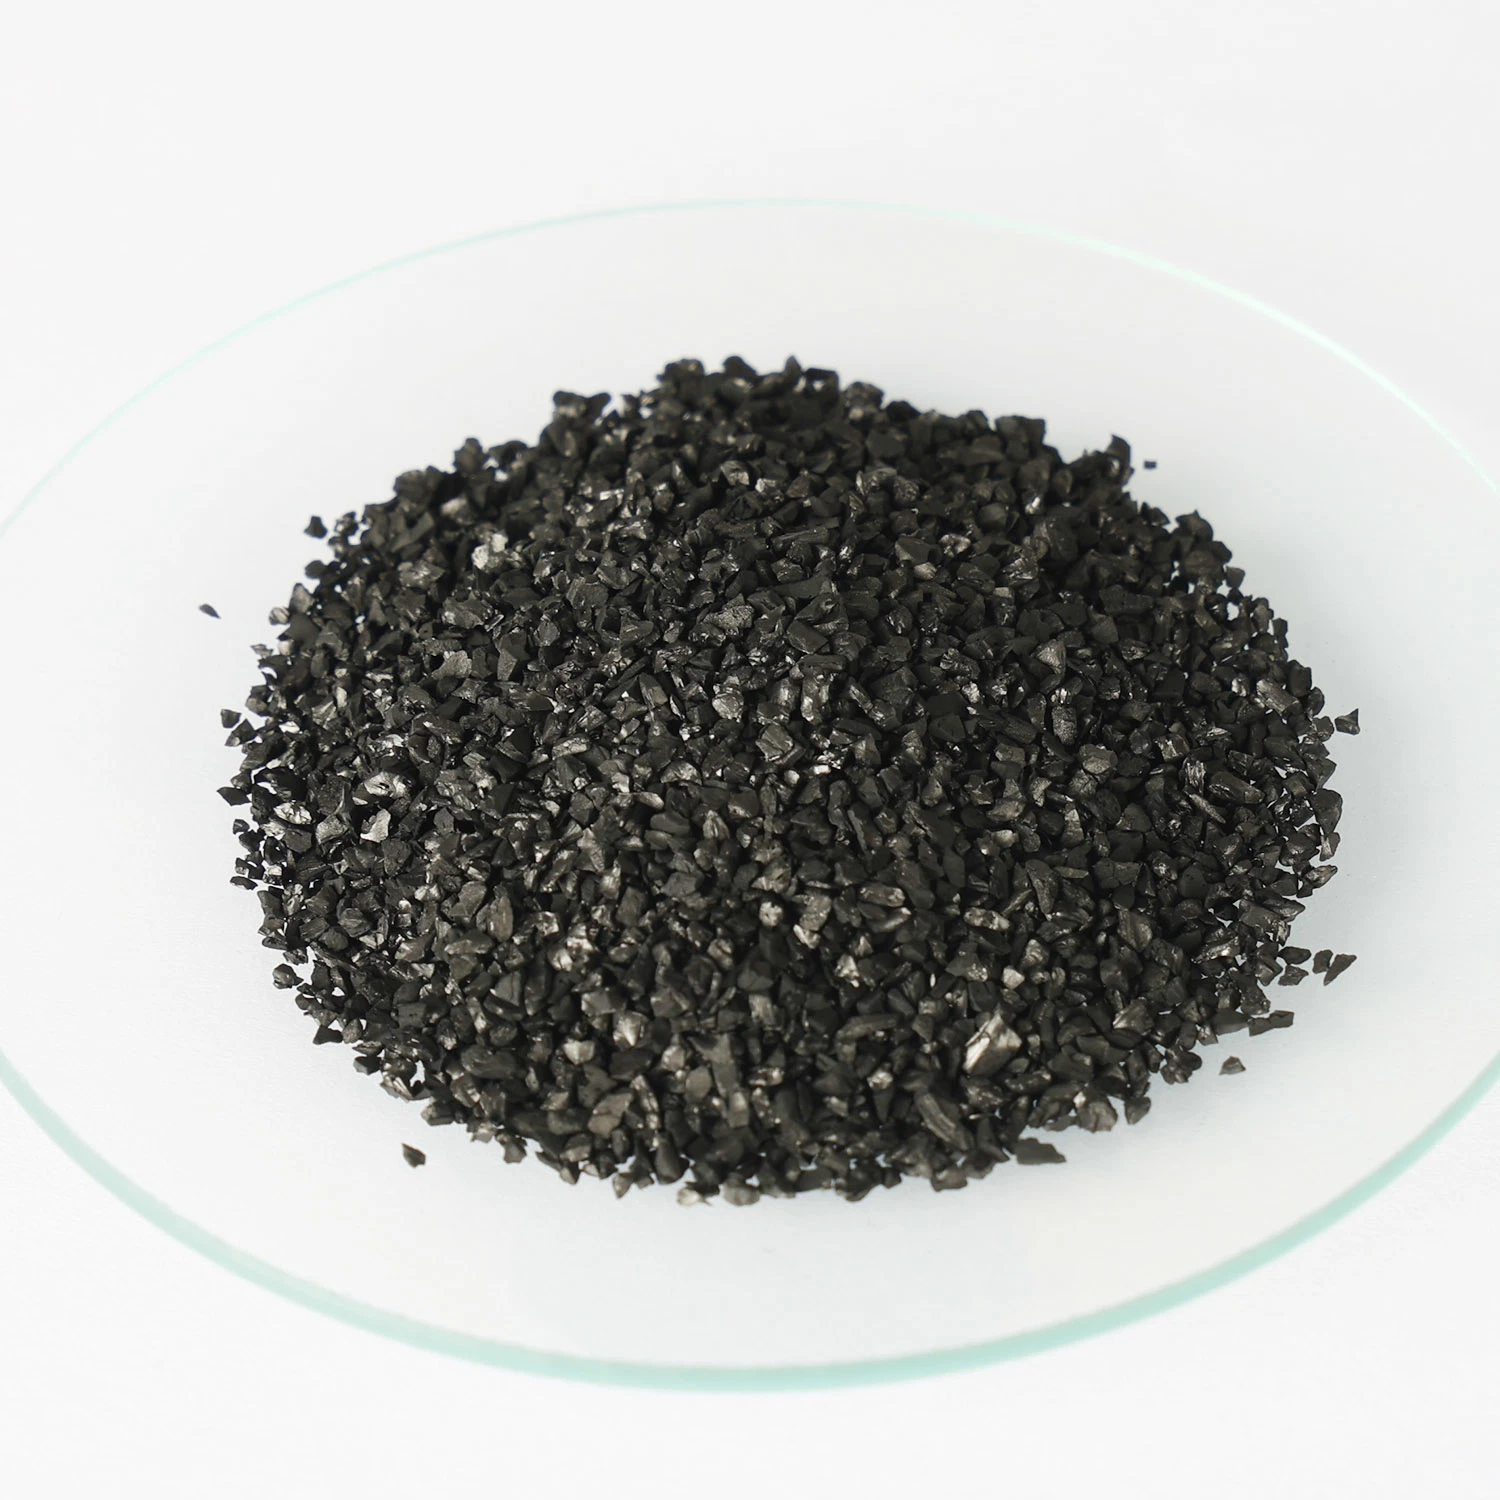 El 10 por ciento el contenido de humedad cáscara de coco negro de carbón activado granular se utiliza principalmente en el Poe el tratamiento de agua